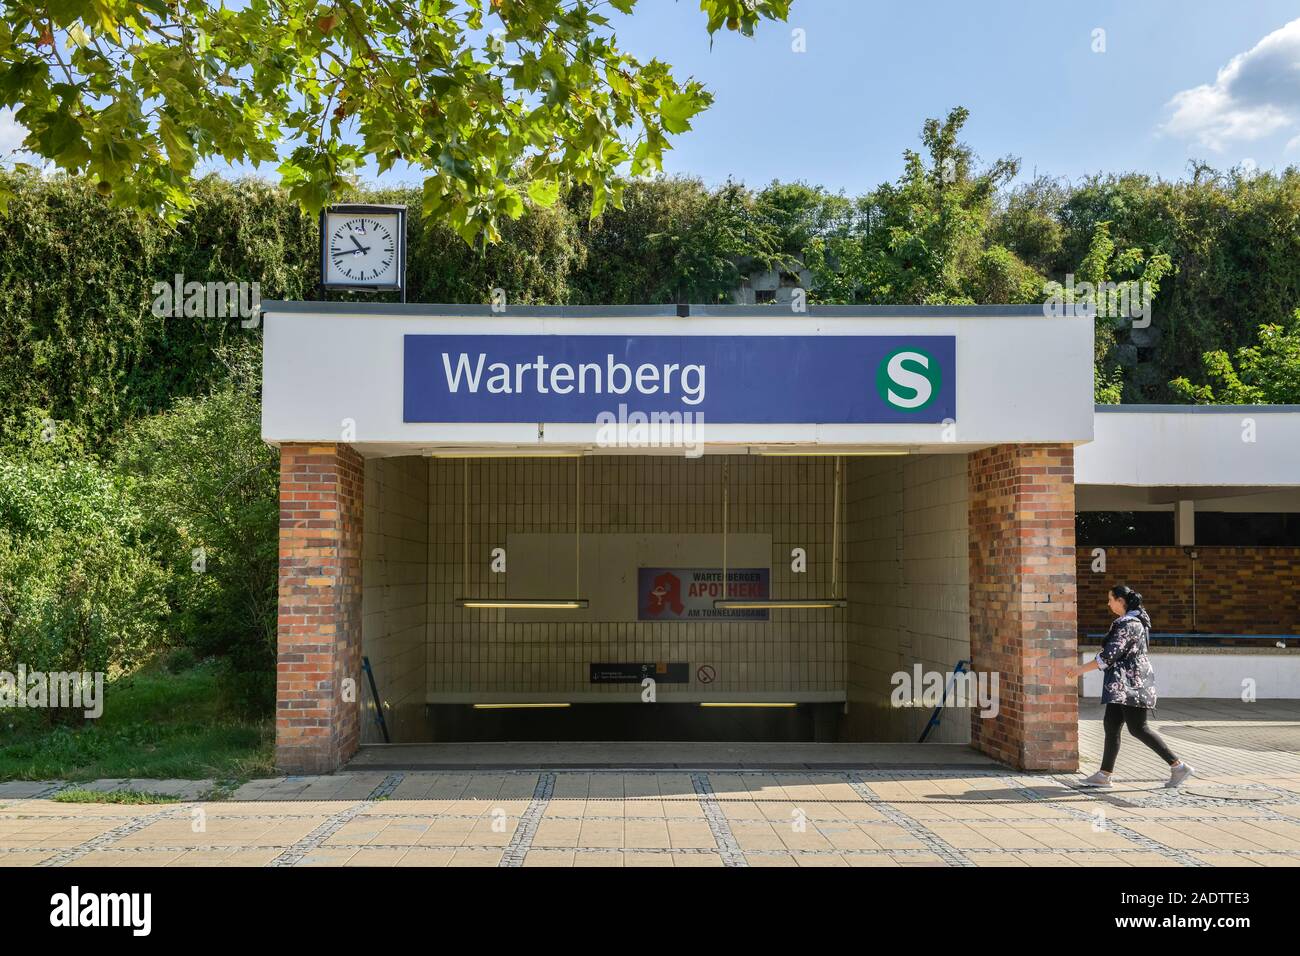 Vorplatz, S-Bahnhof Wartenberg, Ribnitzer Straße, Wartenberg, Lichtenberg, Berlin, Deutschland Stock Photo